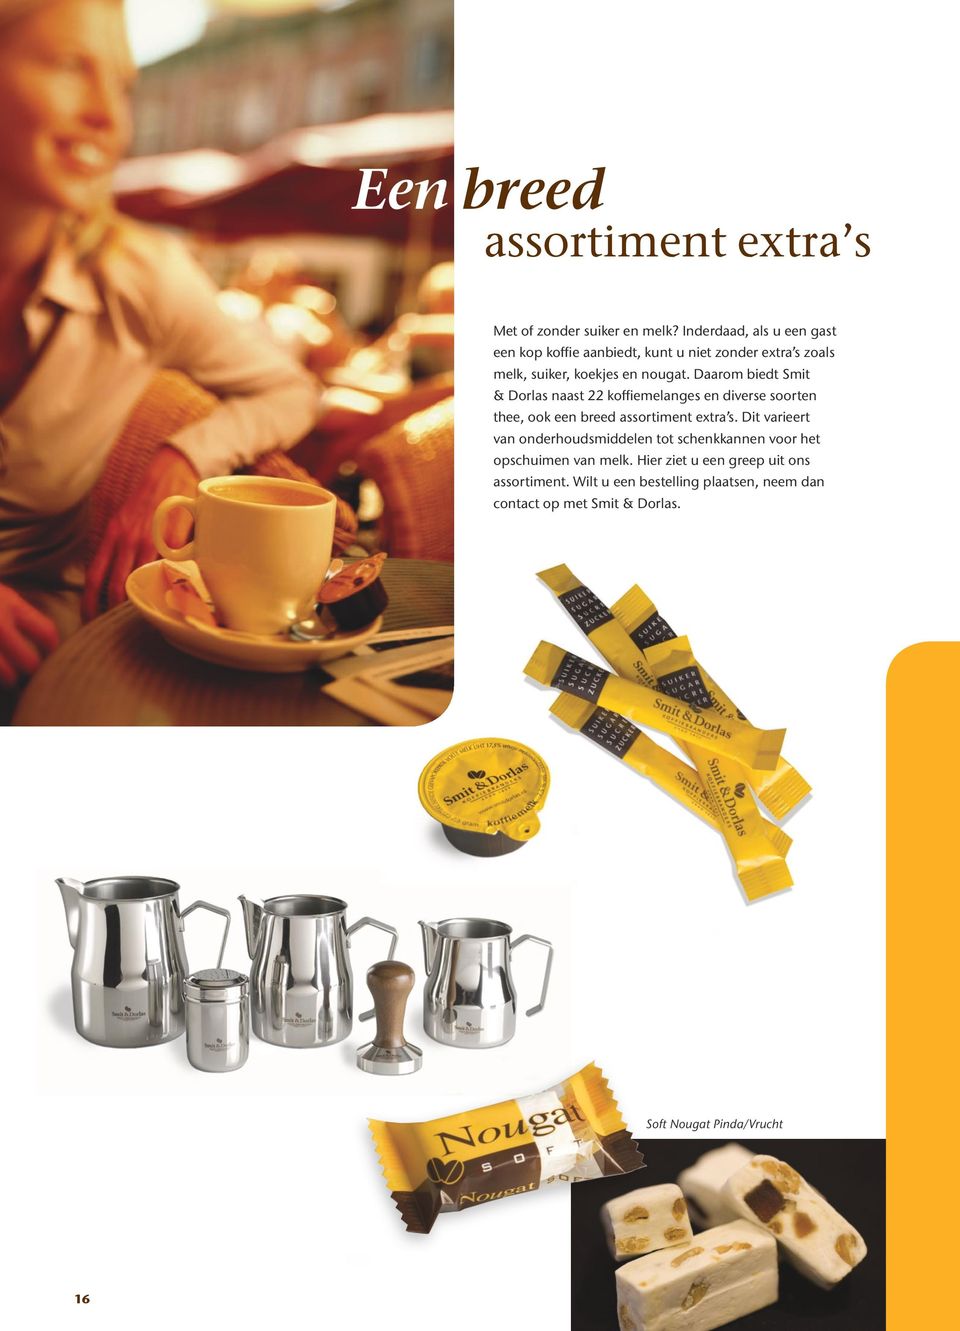 Daarom biedt Smit & Dorlas naast 22 koffiemelanges en diverse soorten thee, ook een breed assortiment extra s.